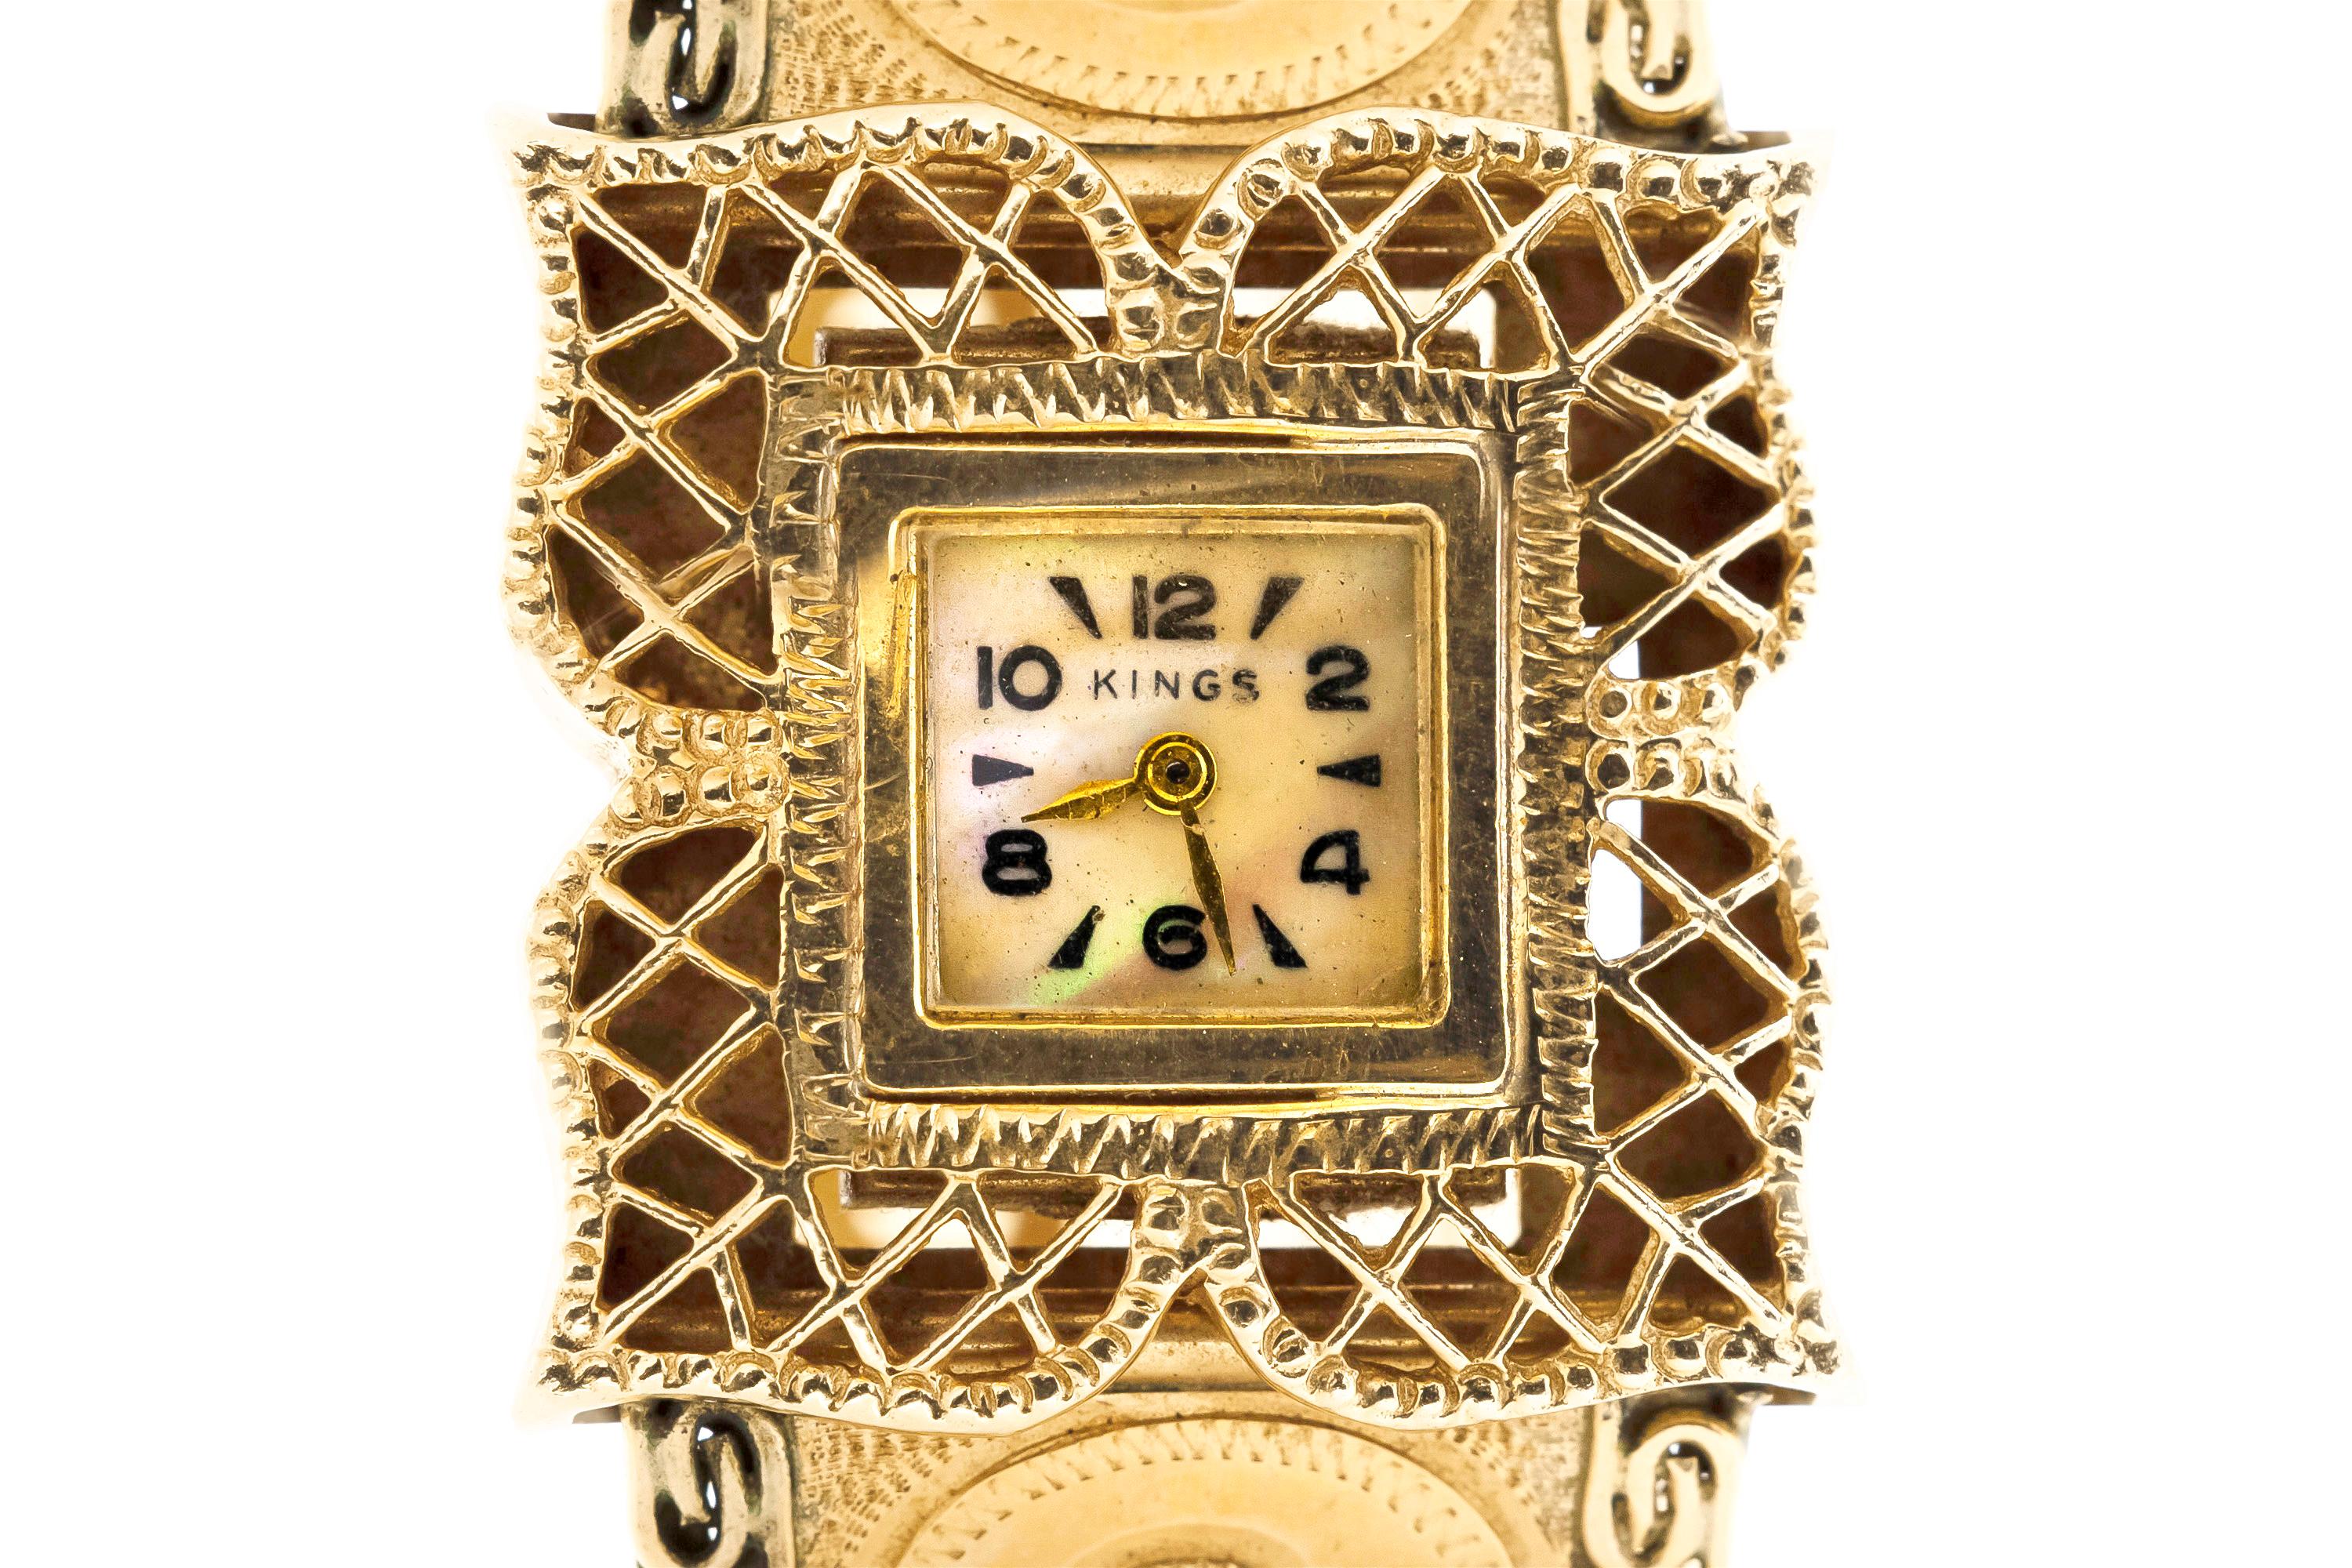 Fein gearbeitet aus 14k Gelbgold mit einer versteckten Uhr.
Circa 1950er Jahre
Größe 6 1/2